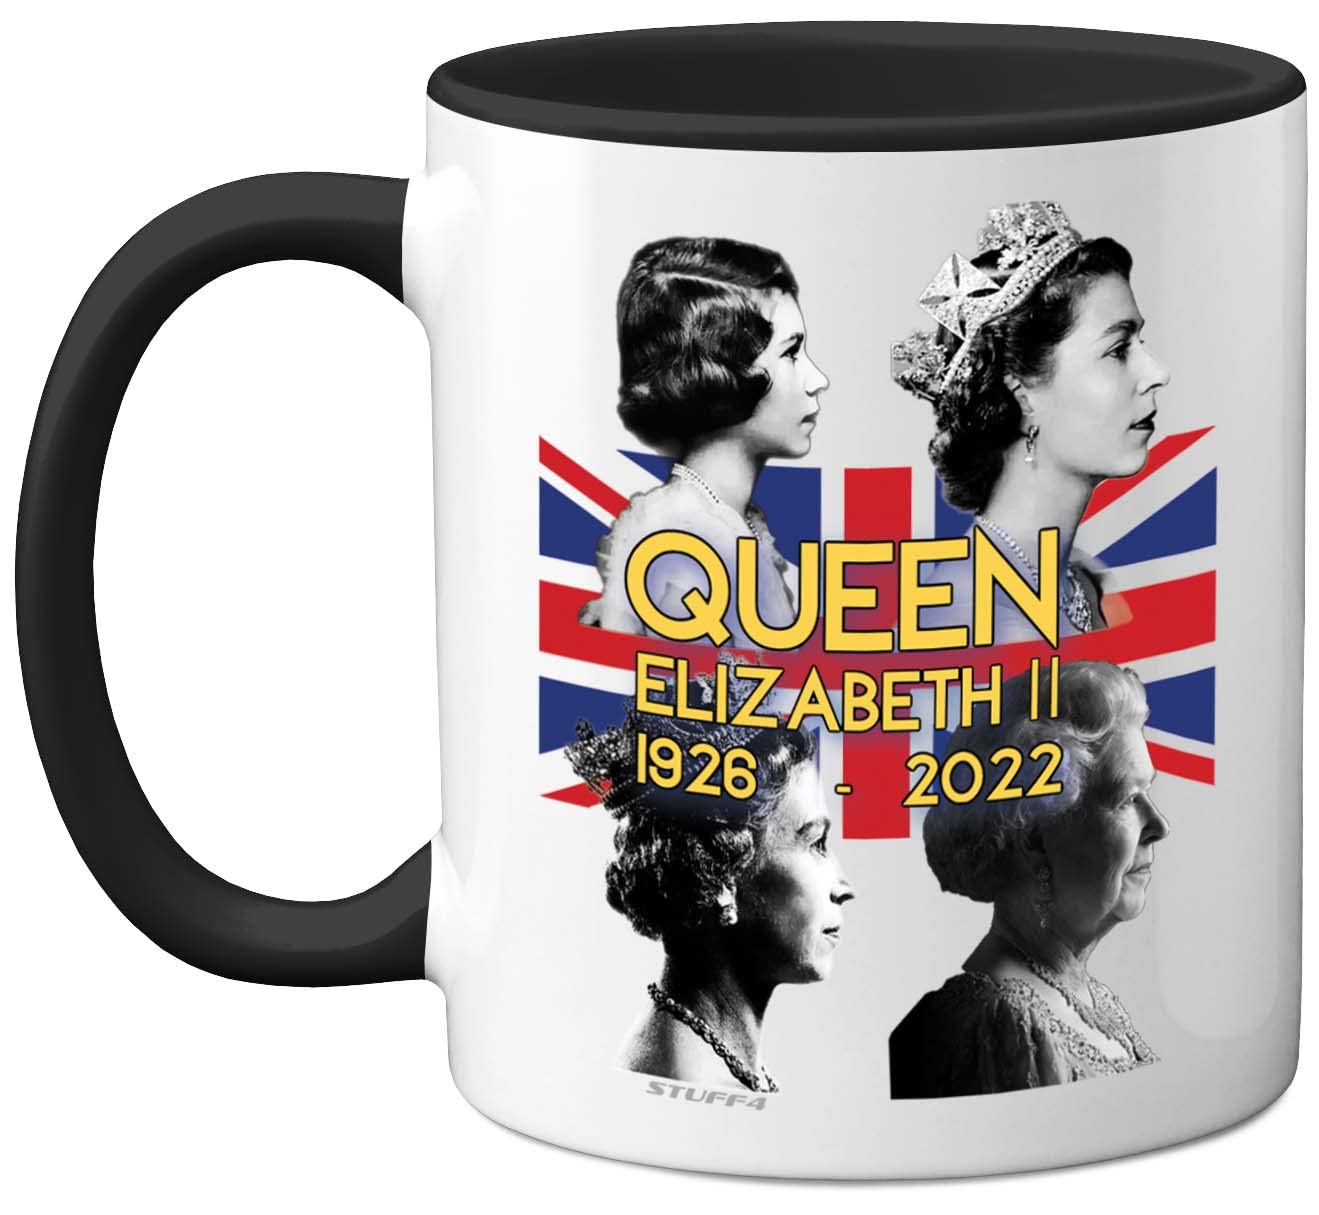 Stuff4 Queen Elizabeth II Gedenktasse – The Queen Elizabeth II Union Jack Andenken – königliche Gedenkgeschenke, Souvenirs, königliche Tassen für Sie und Ihn, 325 ml, Keramik, Schwarz